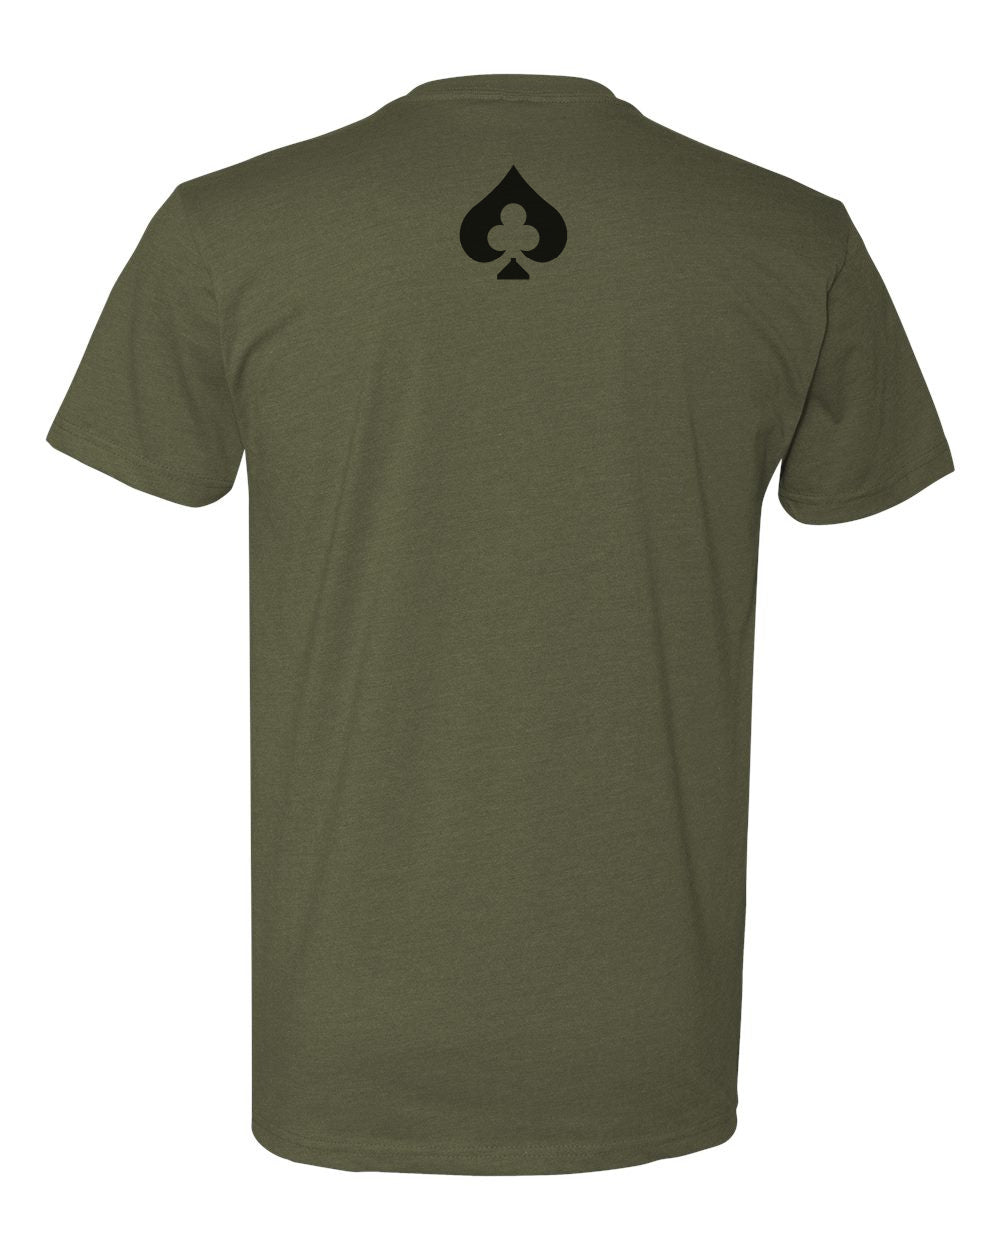 LCC Text Shirt - Military Green